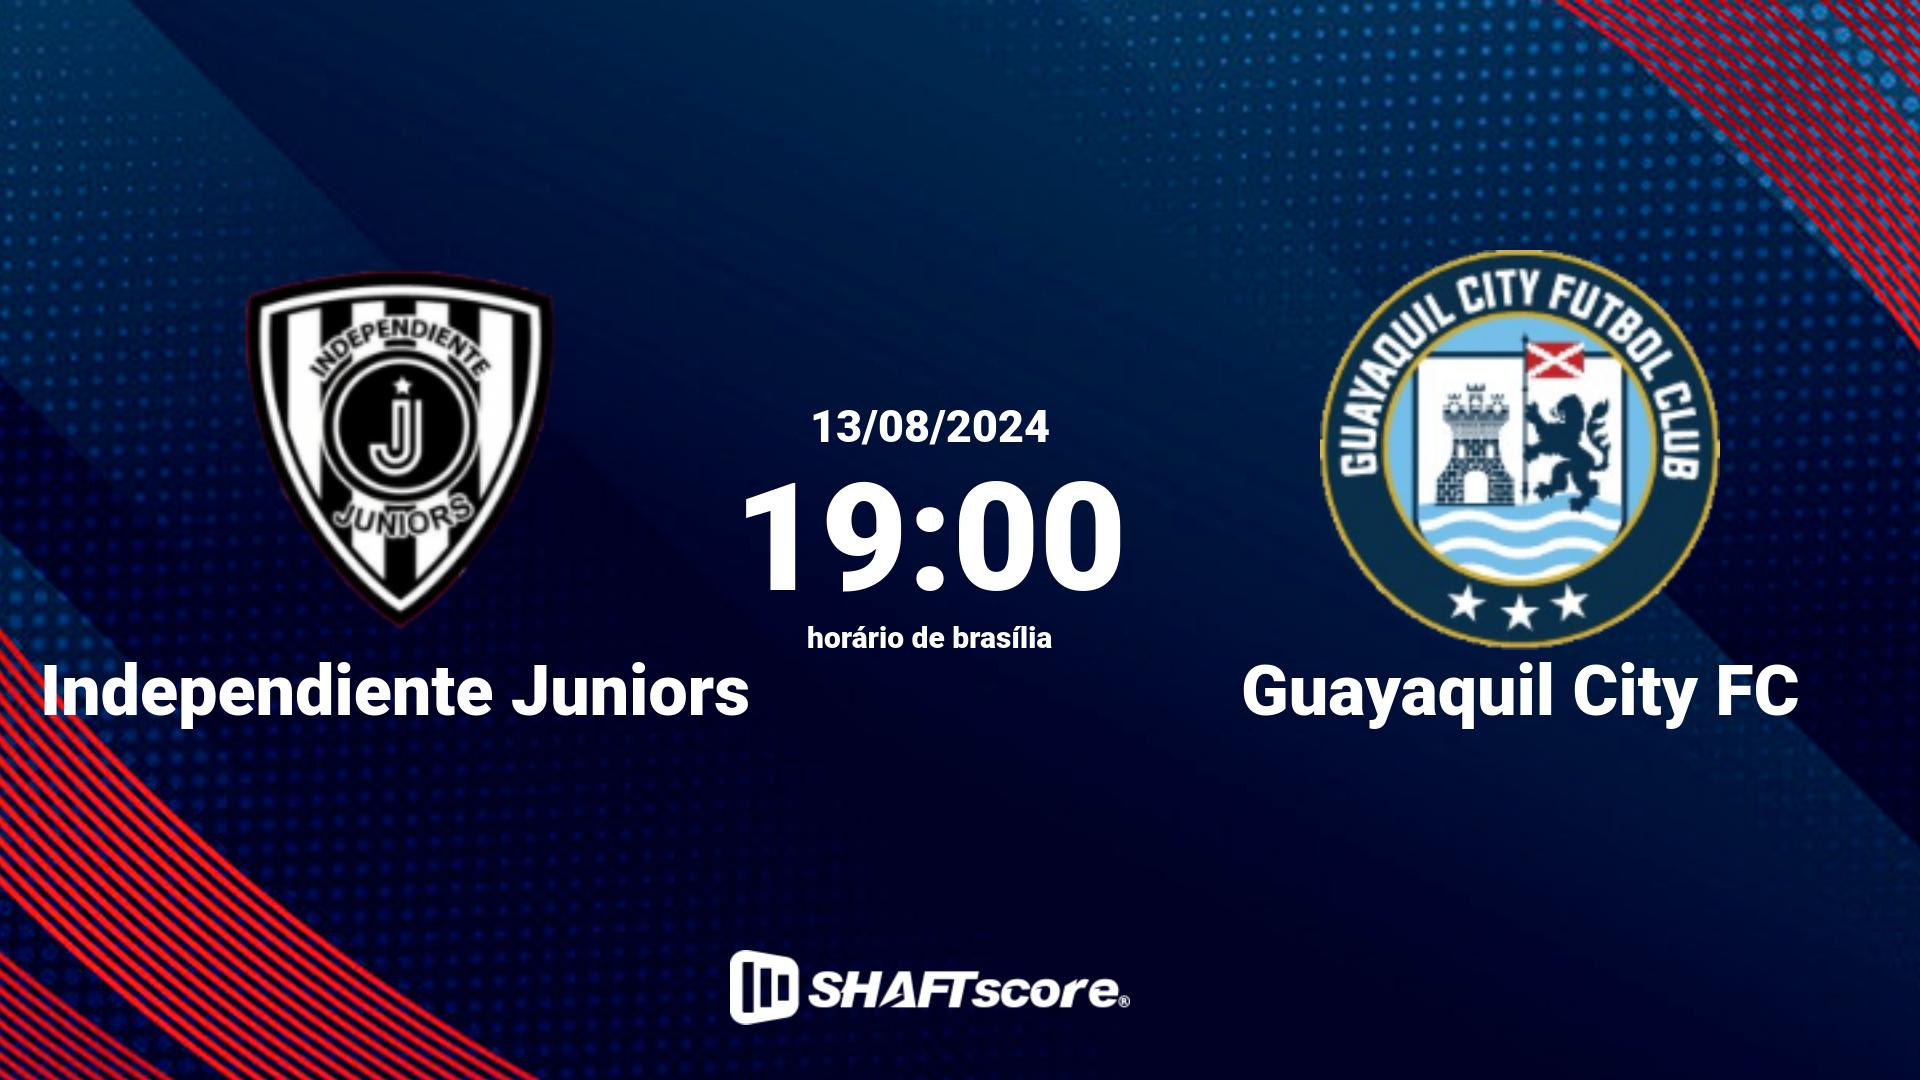 Estatísticas do jogo Independiente Juniors vs Guayaquil City FC 13.08 19:00